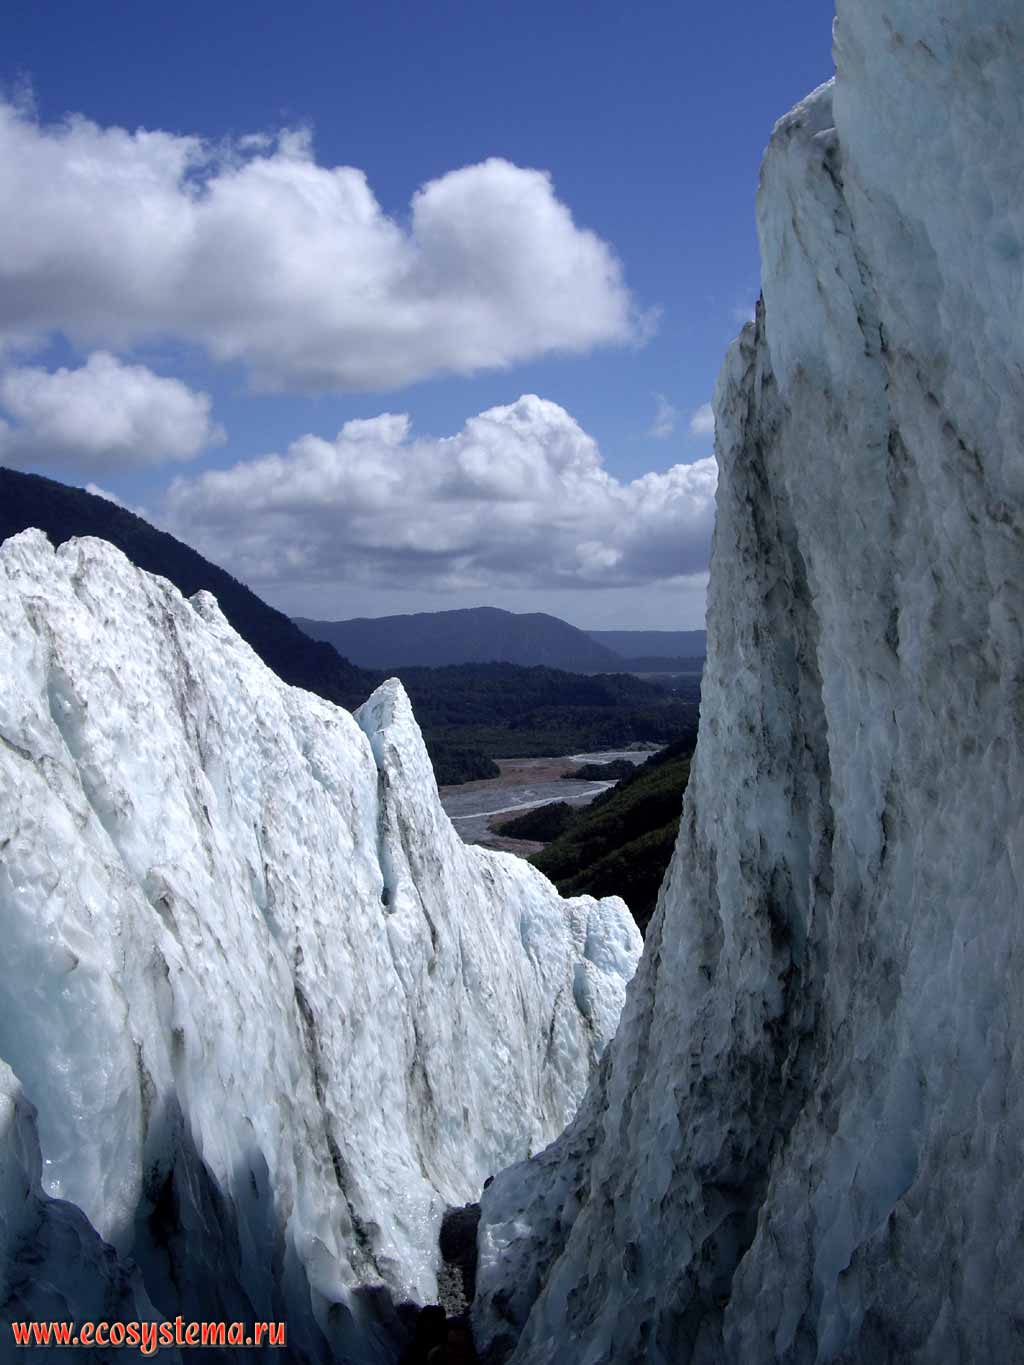 Расщелины в теле ледника, образованные в процессе его таяния.
Ледник Франца Иосифа (Джозефа)(регион Уэст-Кост,
западное побережье Южного острова)